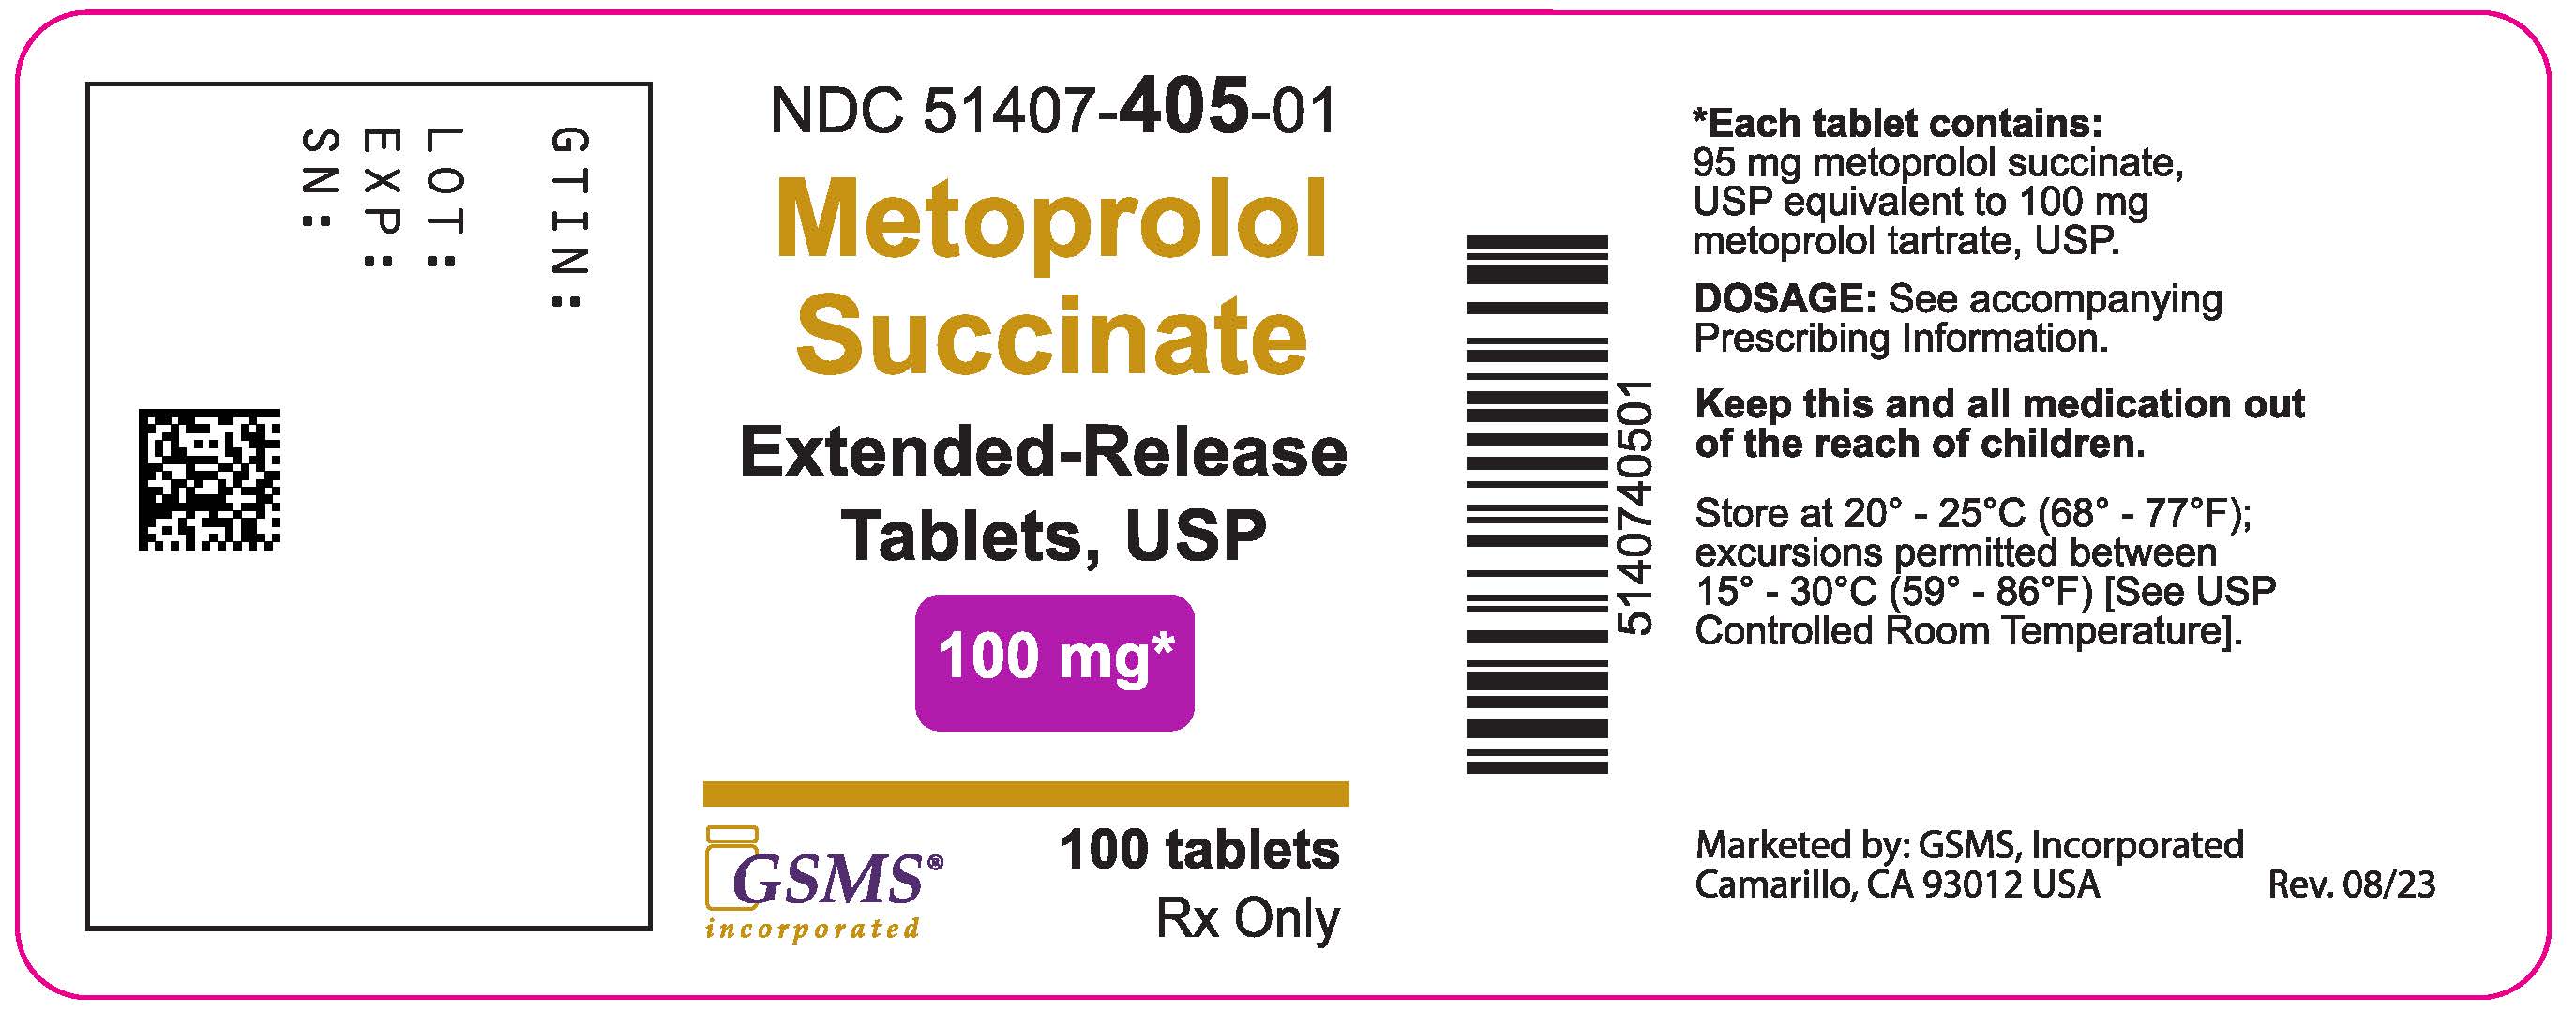 51407-405-01LB - Metoprolol Succinate ER - Ingenus - Rev. 0823.jpg